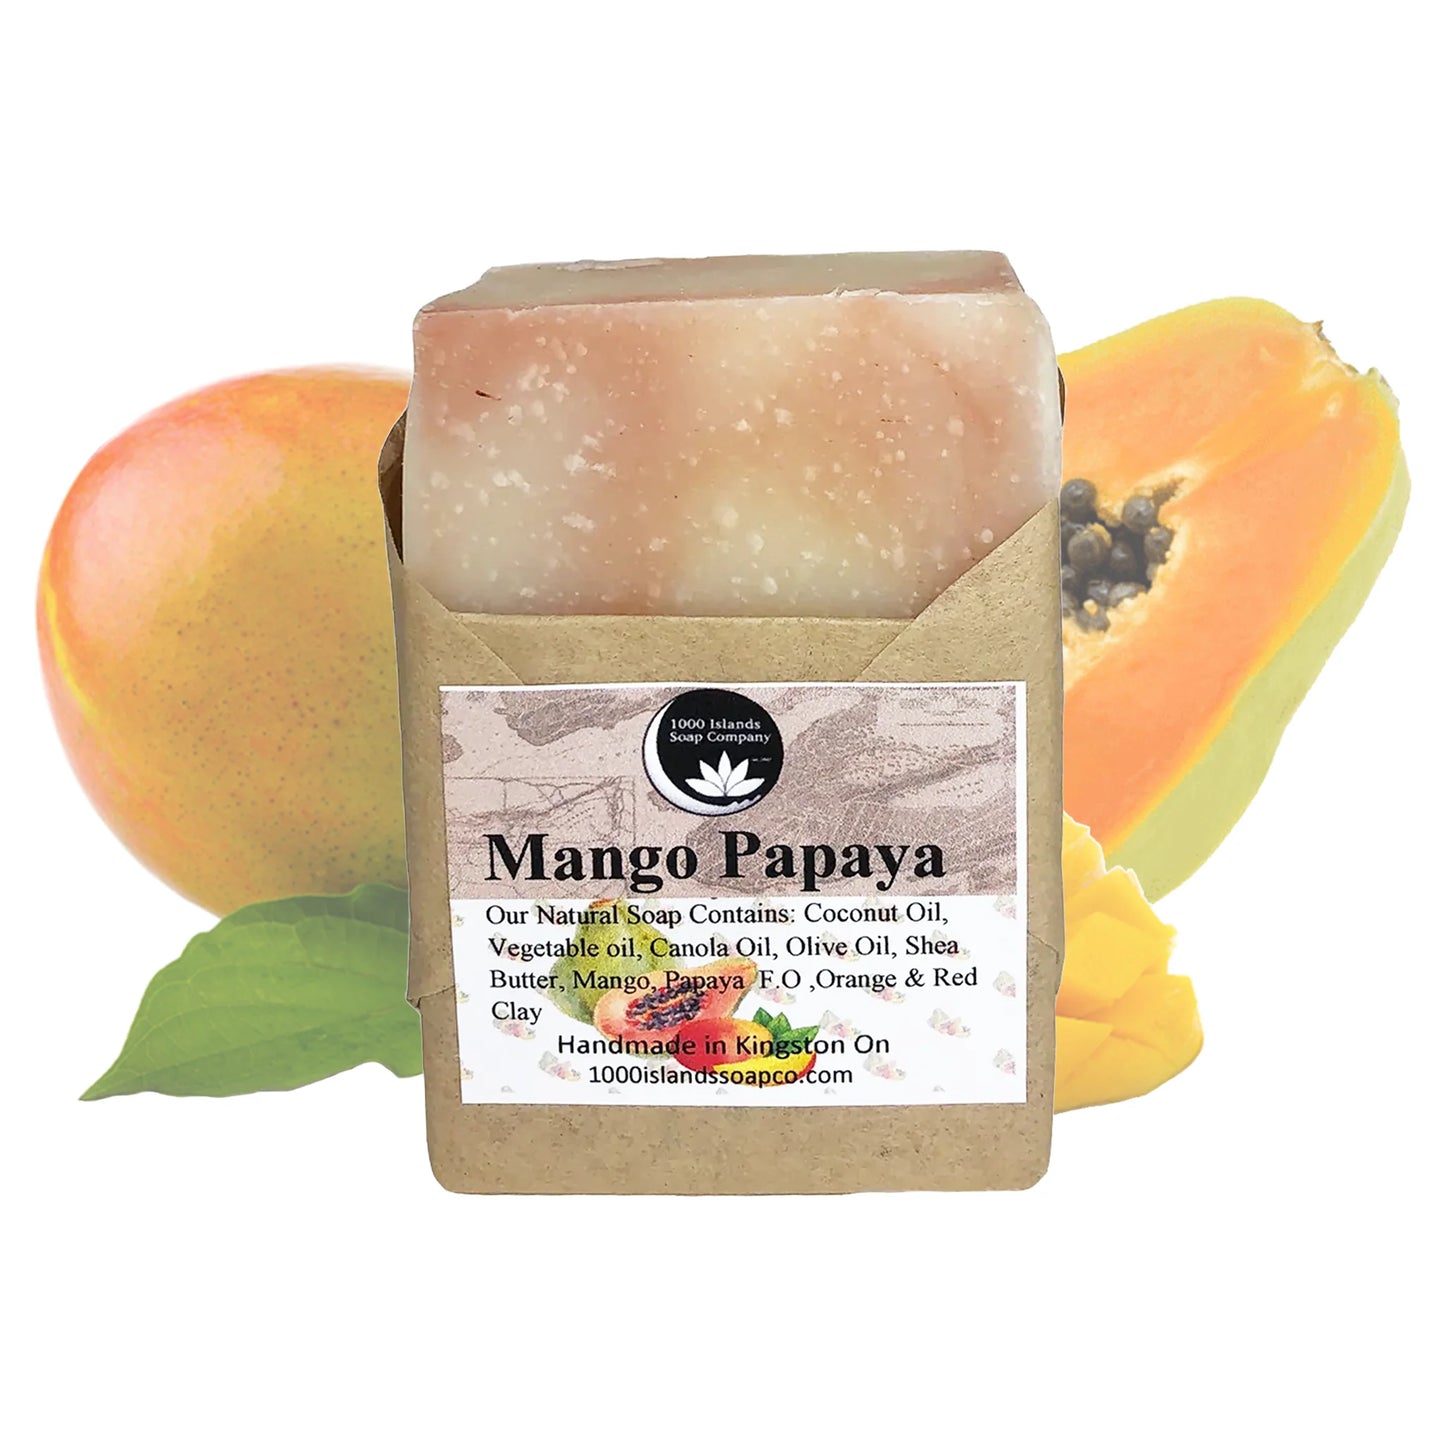 Mango Papaya Natural Soap Bar